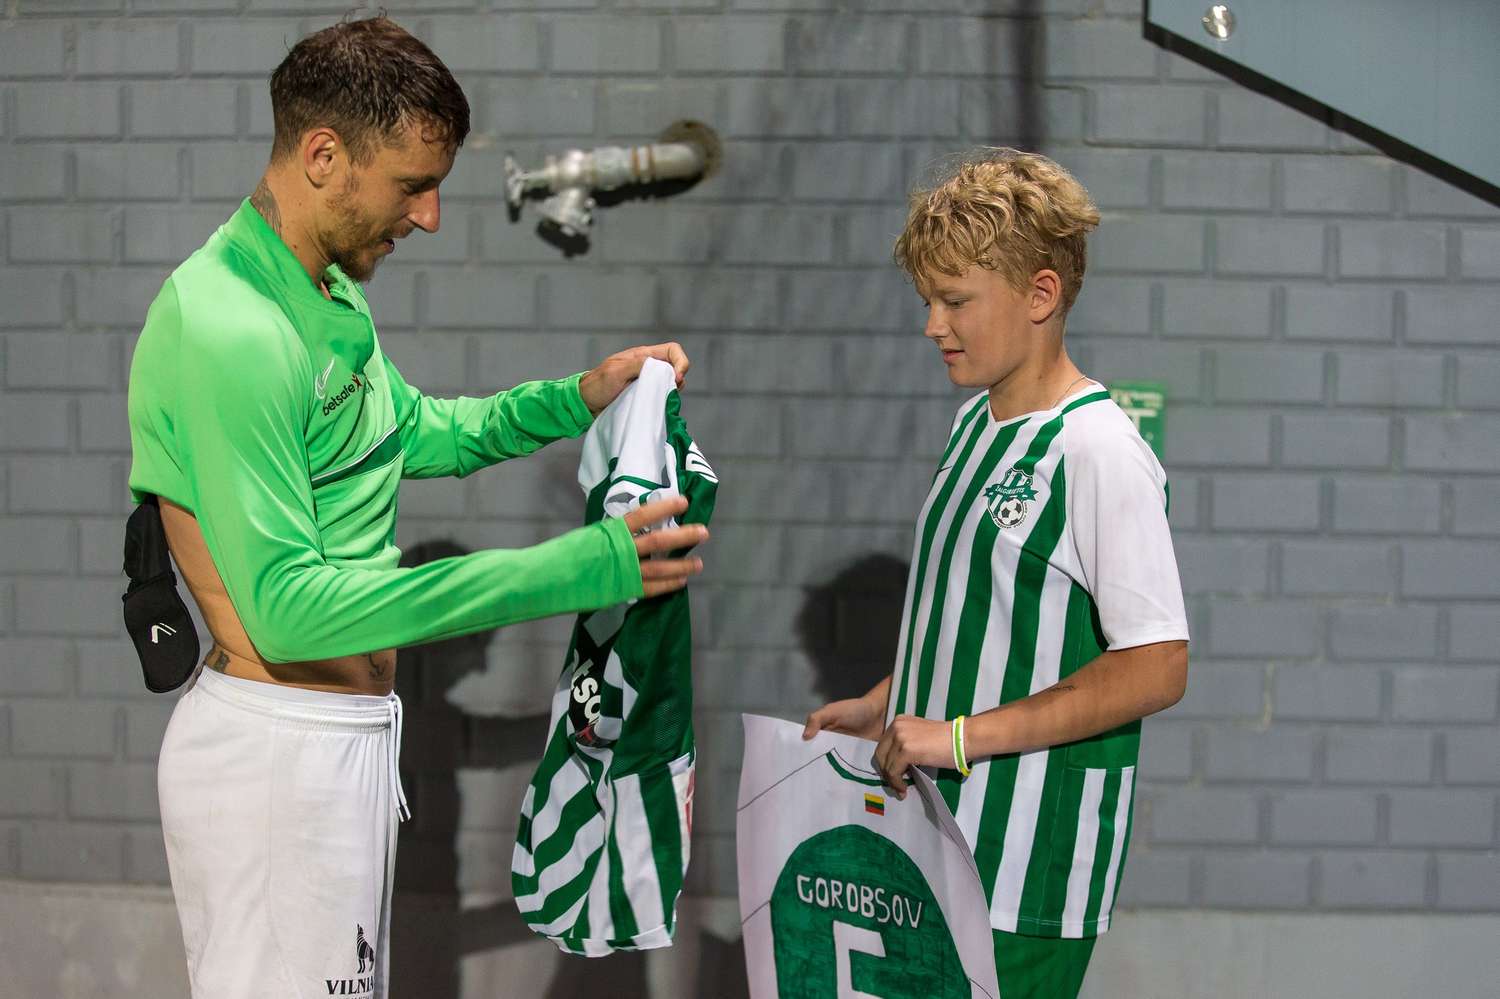 Fútbol: el gesto de Nicolás Gorobsov con un niño después de un partido